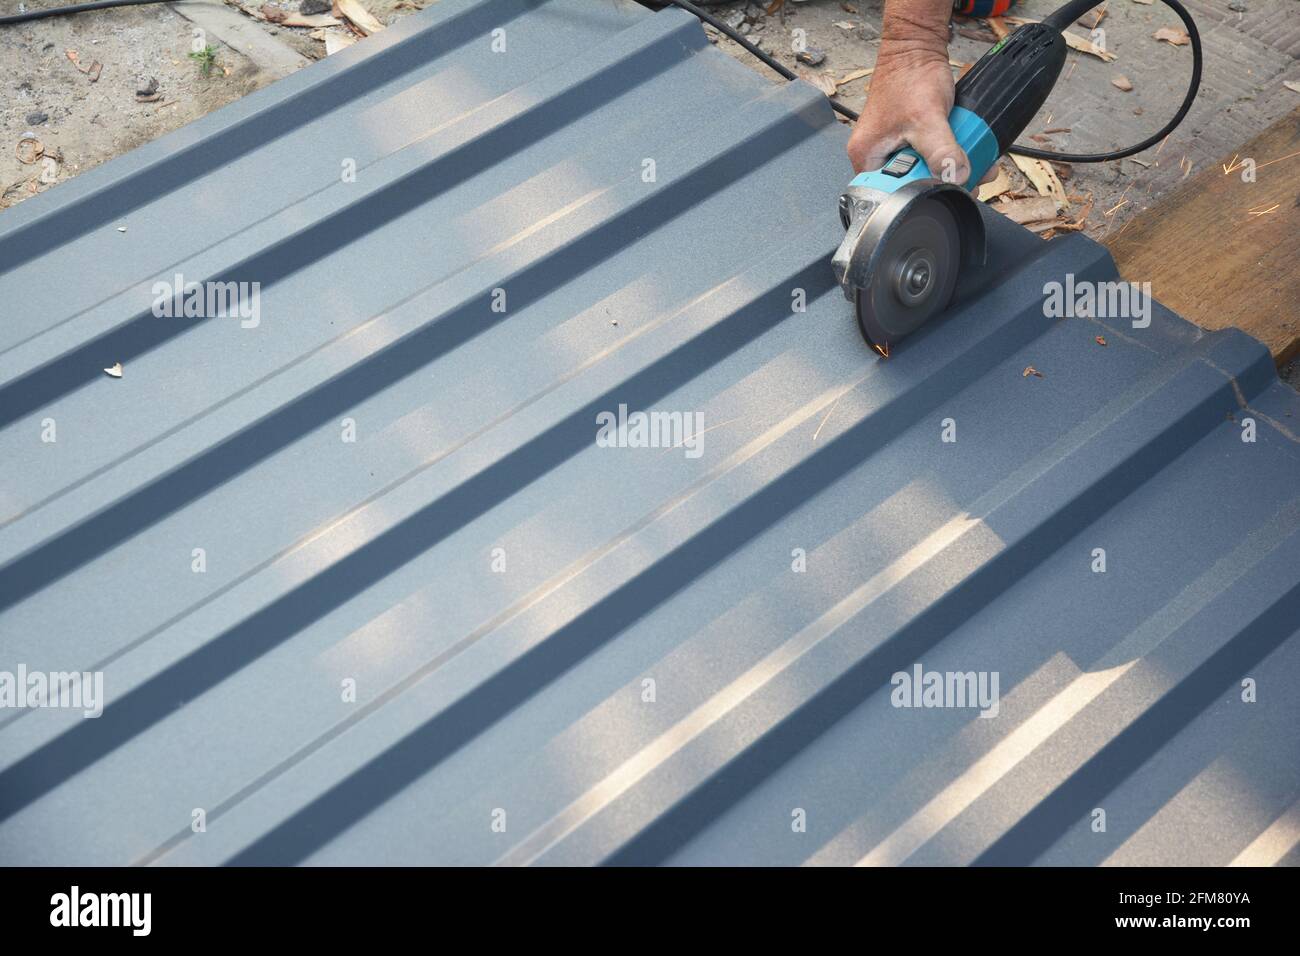 Un techador está cortando con una amoladora angular de potencia una chapa de metal corrugado para techos, una baldosa de metal para techos. Foto de stock